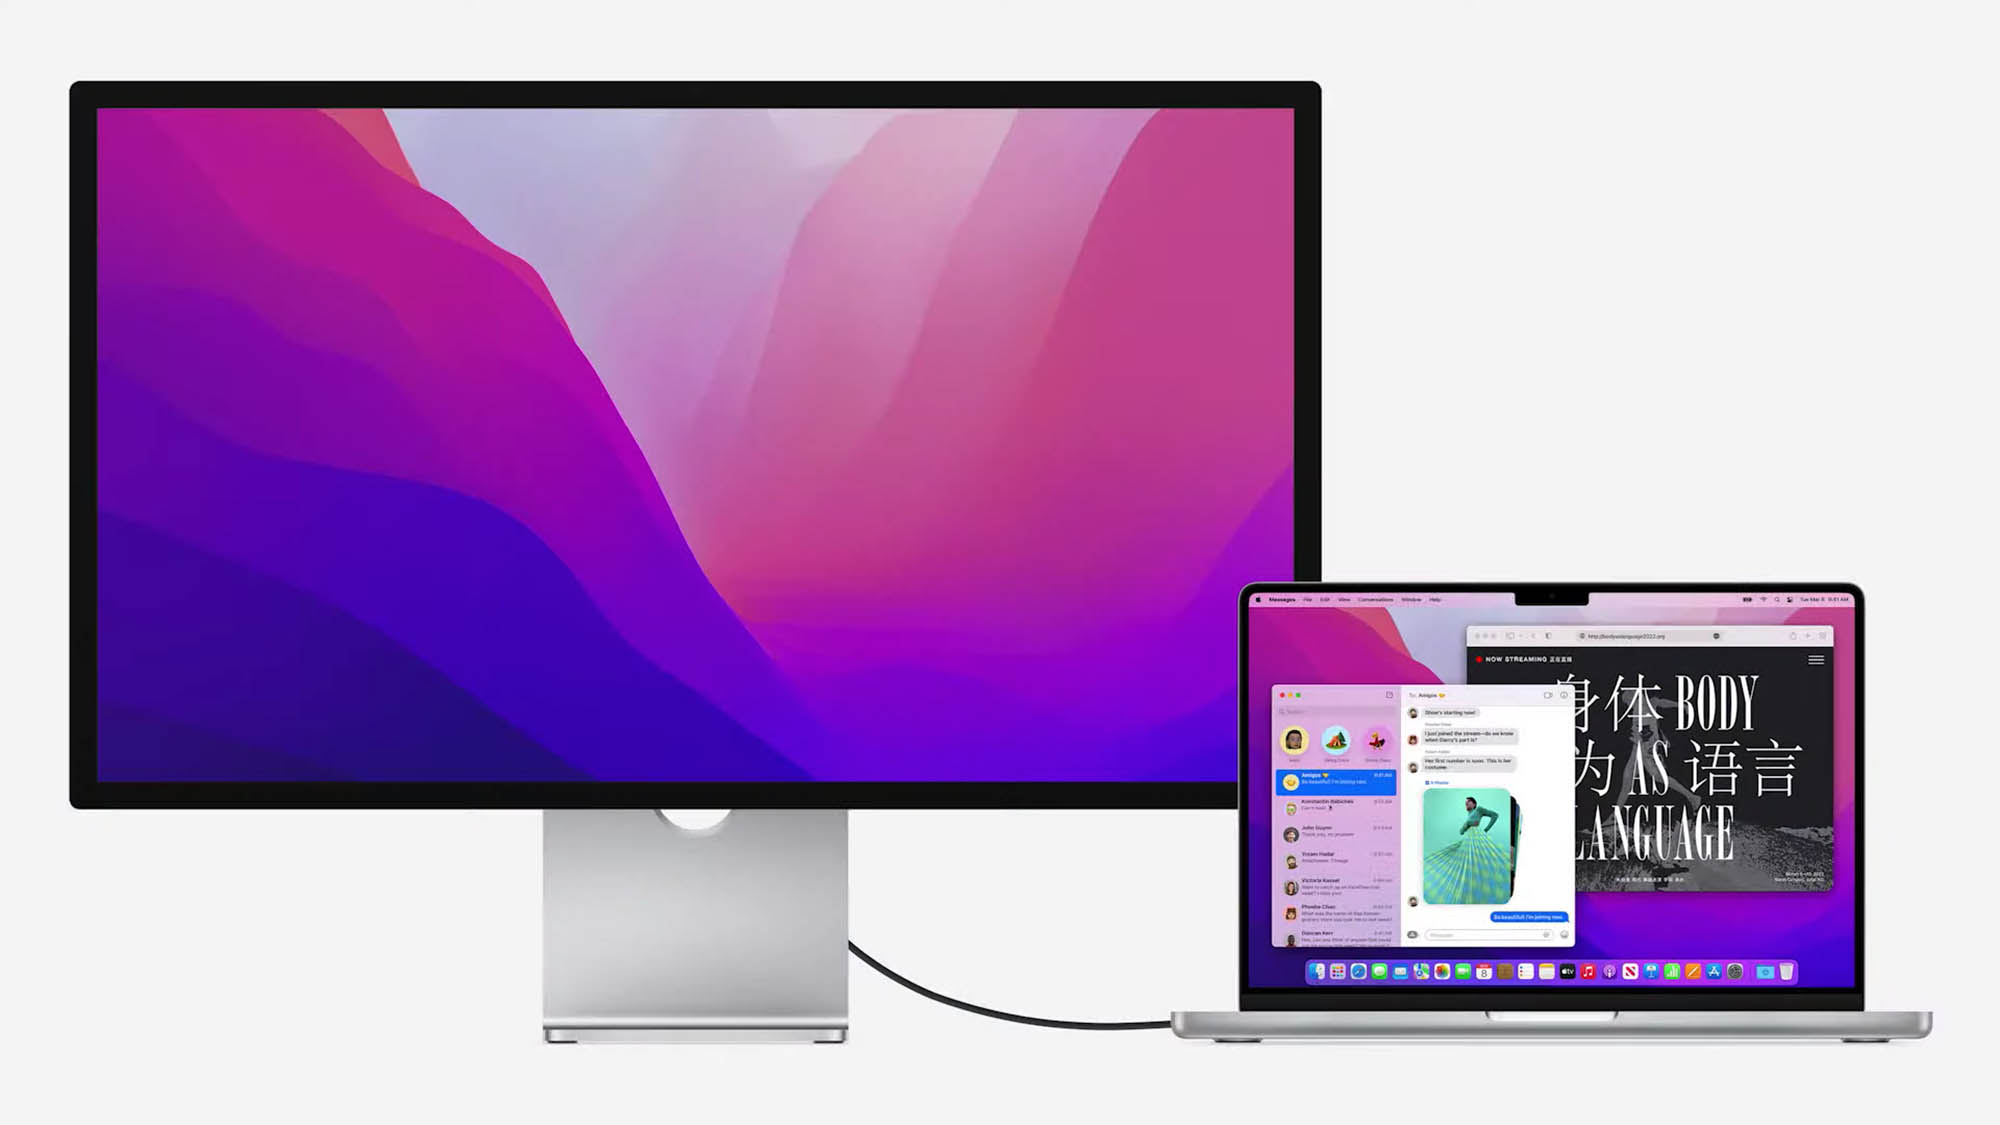 MacBook Pro connected to Apple Studio Display.